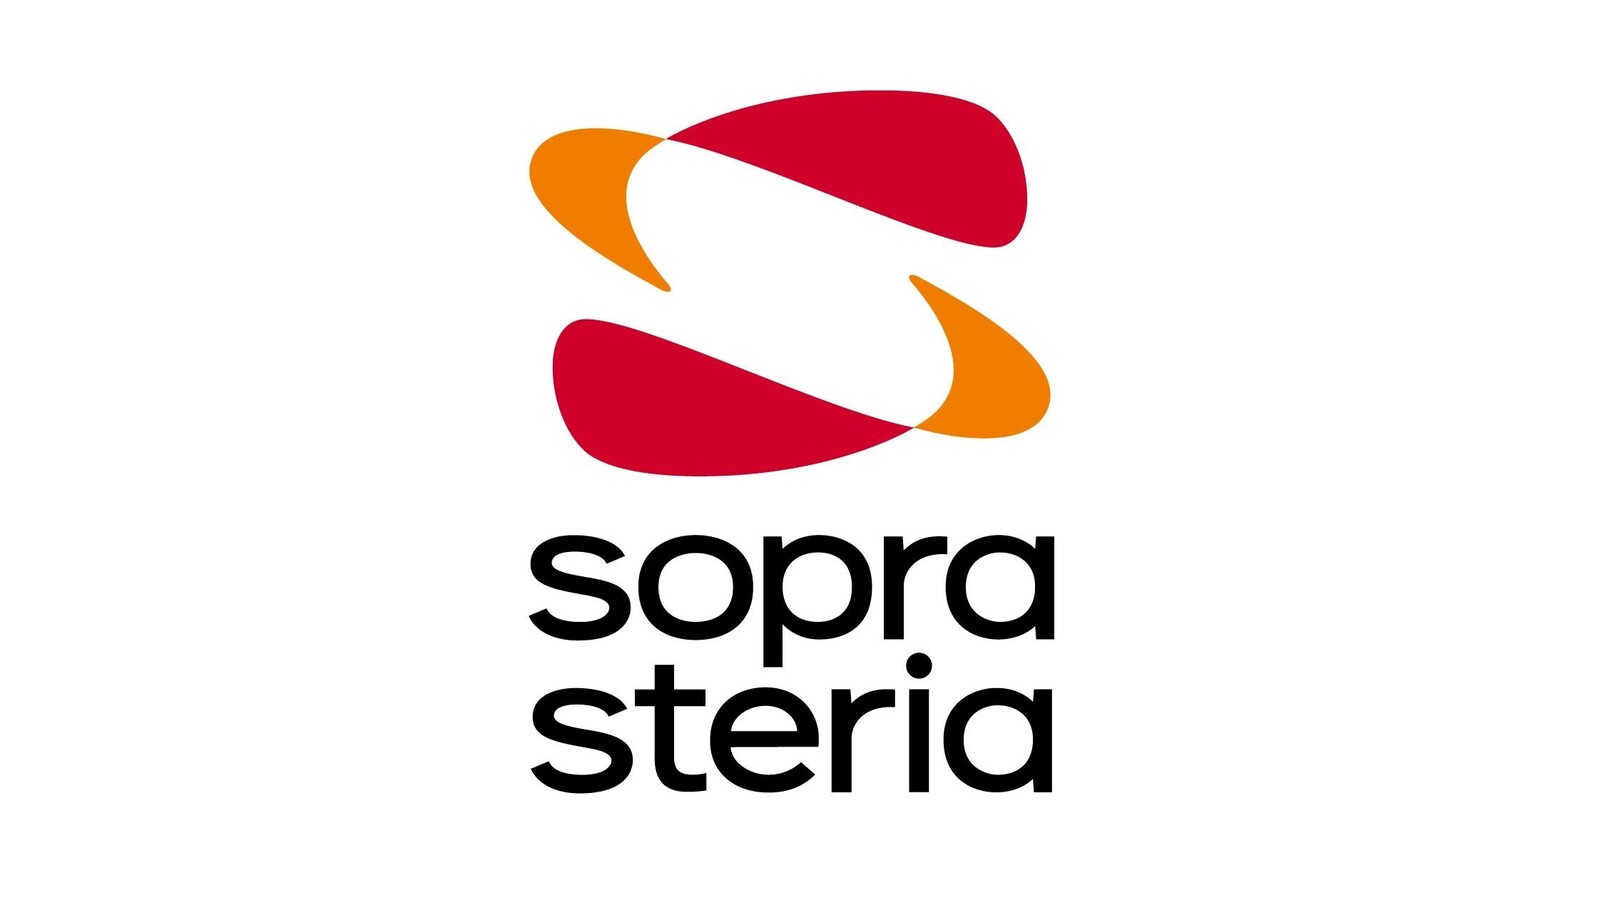 Sopra Steria confirme avoir été touchée par une nouvelle version du ransomware Ryuk